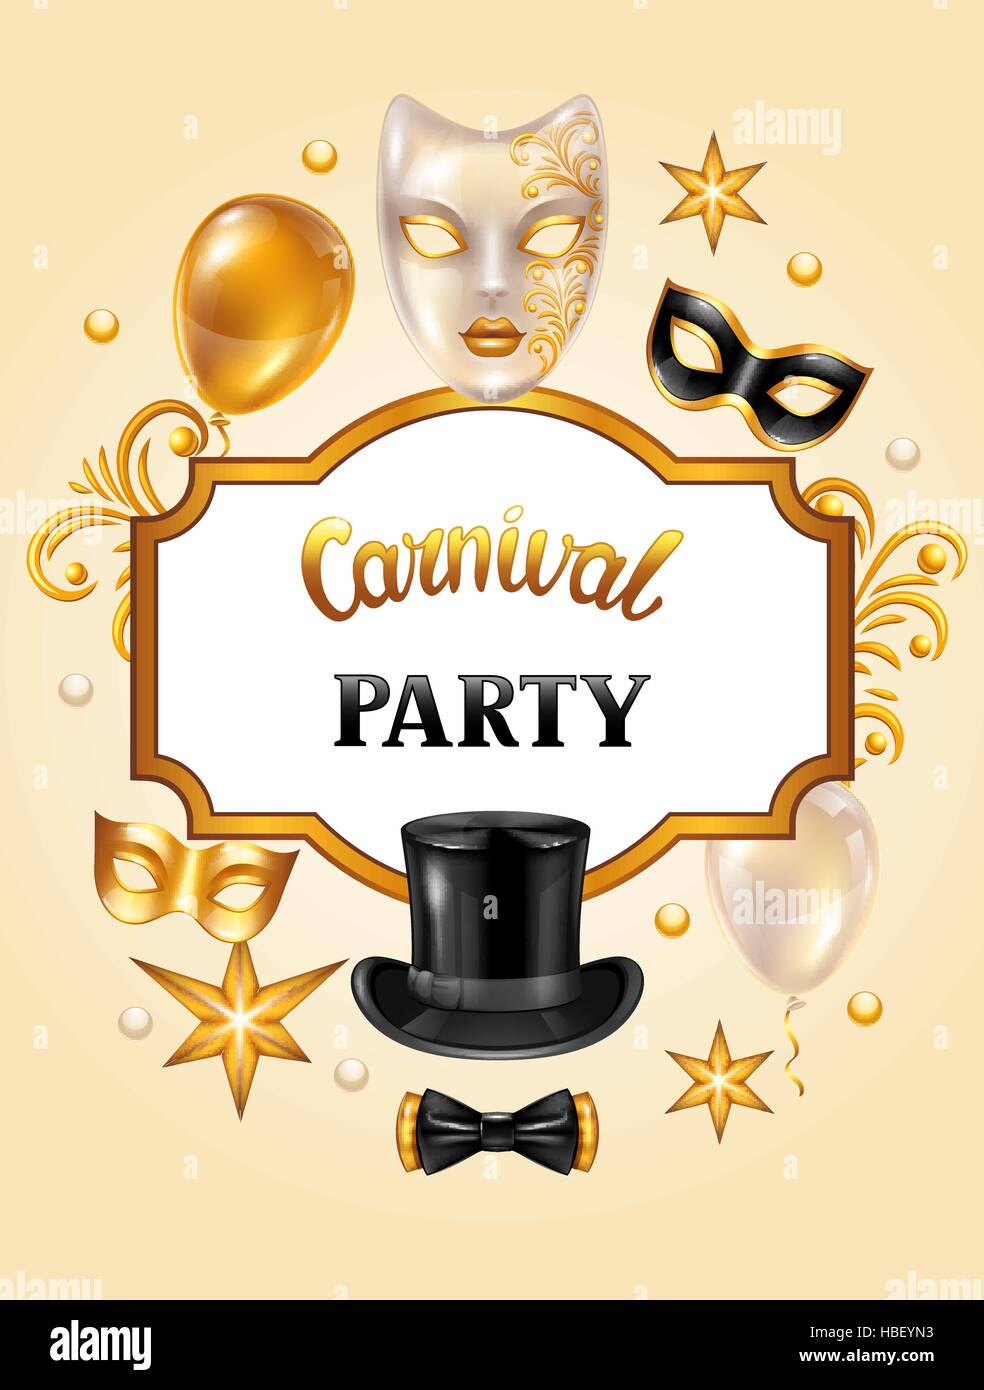 Carte d'invitation de carnaval avec les masques d'or et de décorations.  Celebration party background Image Vectorielle Stock - Alamy